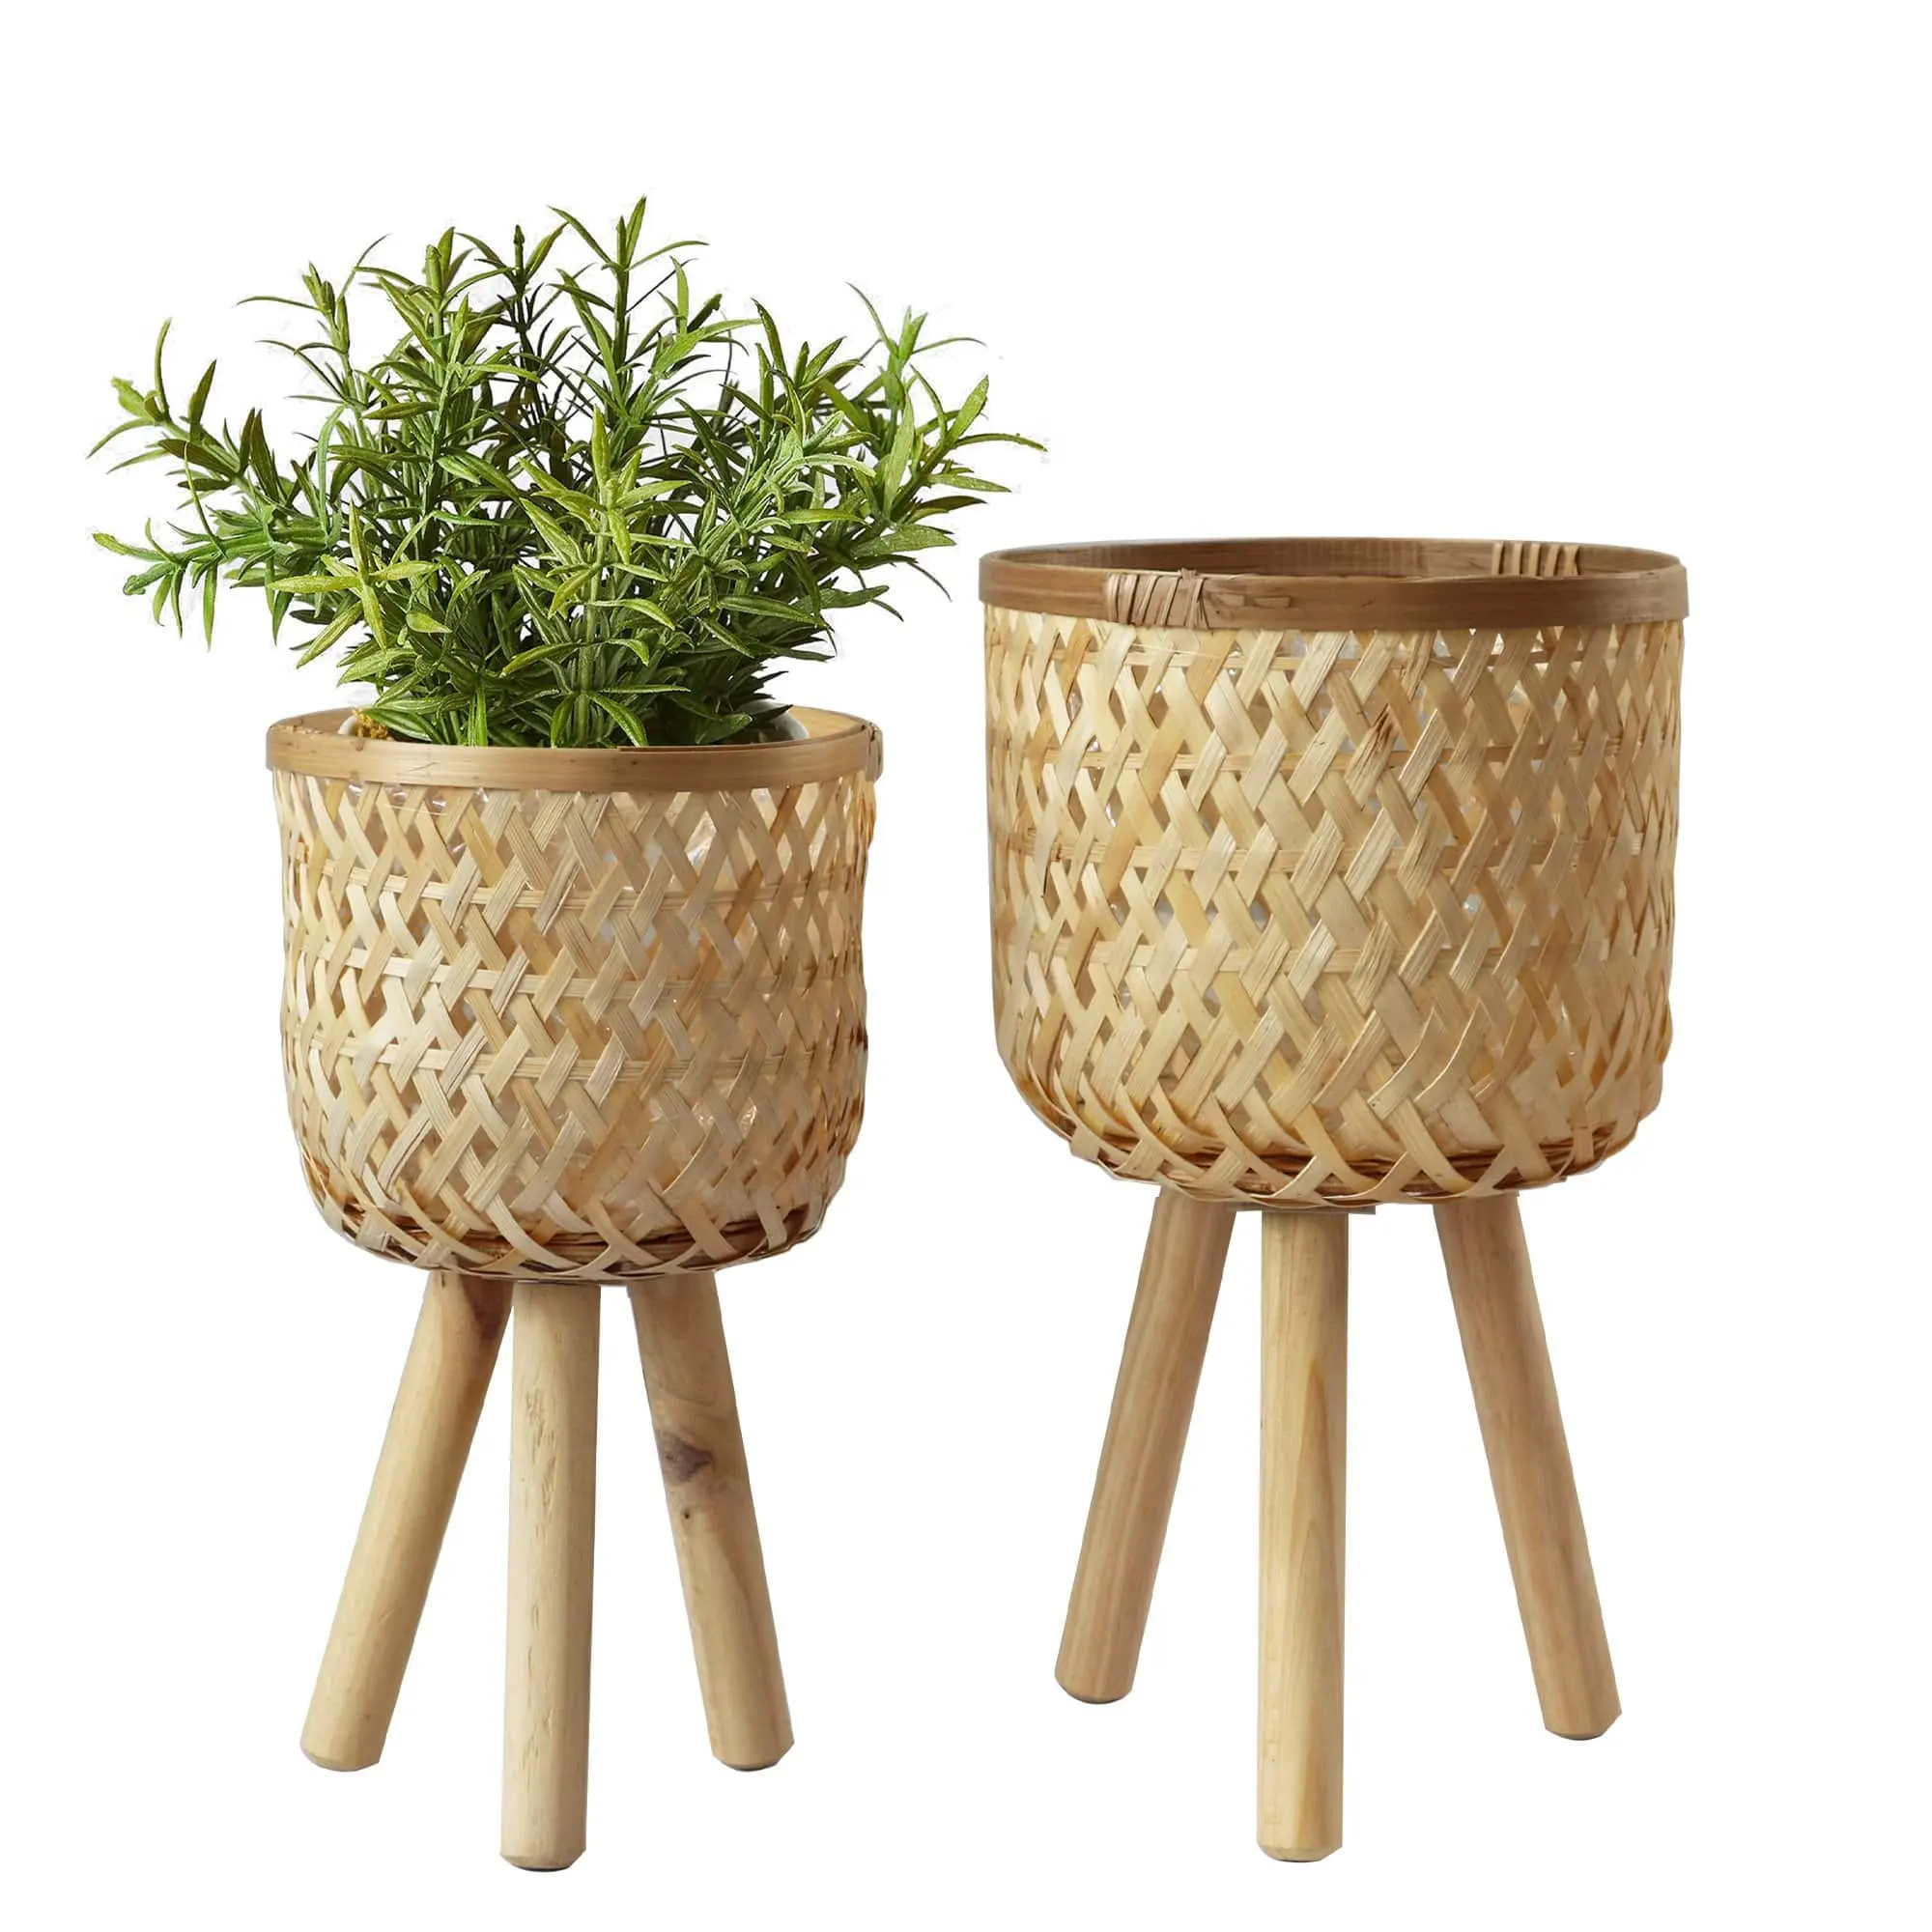 Set von 2 schönen Bambus Wicker Pflanzer Korb mit abnehmbaren Beinen, Blumentopf Bambus korb Blumentopf